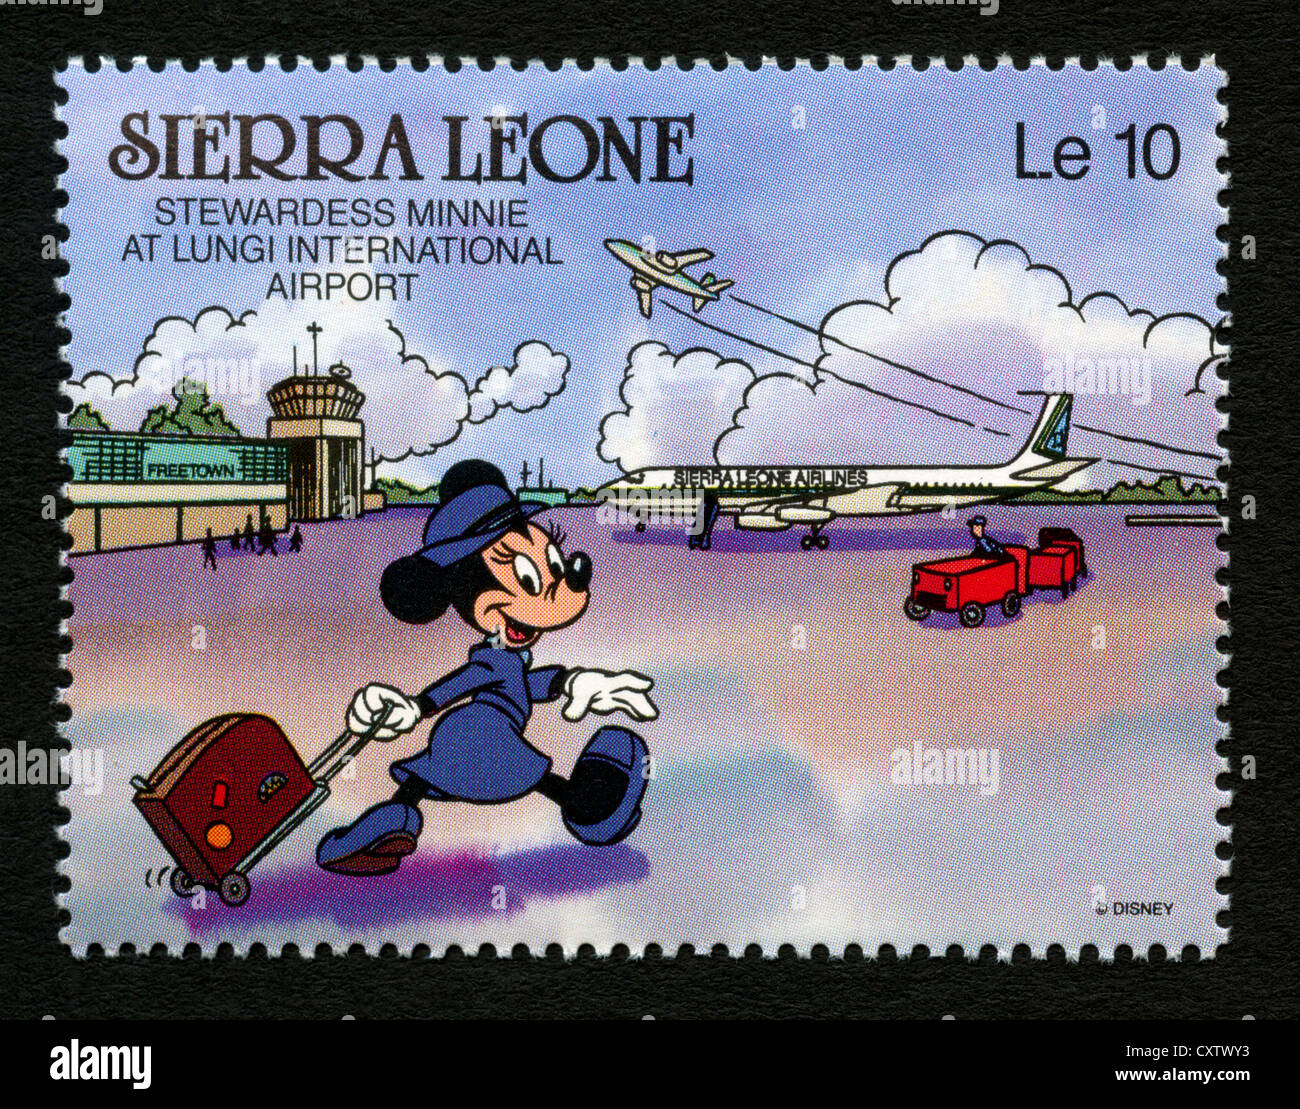 Sierra Leone francobollo - Cartoni animati Disney - Minnie Mouse, la hostess a Lungi dall'Aeroporto Internazionale Foto Stock